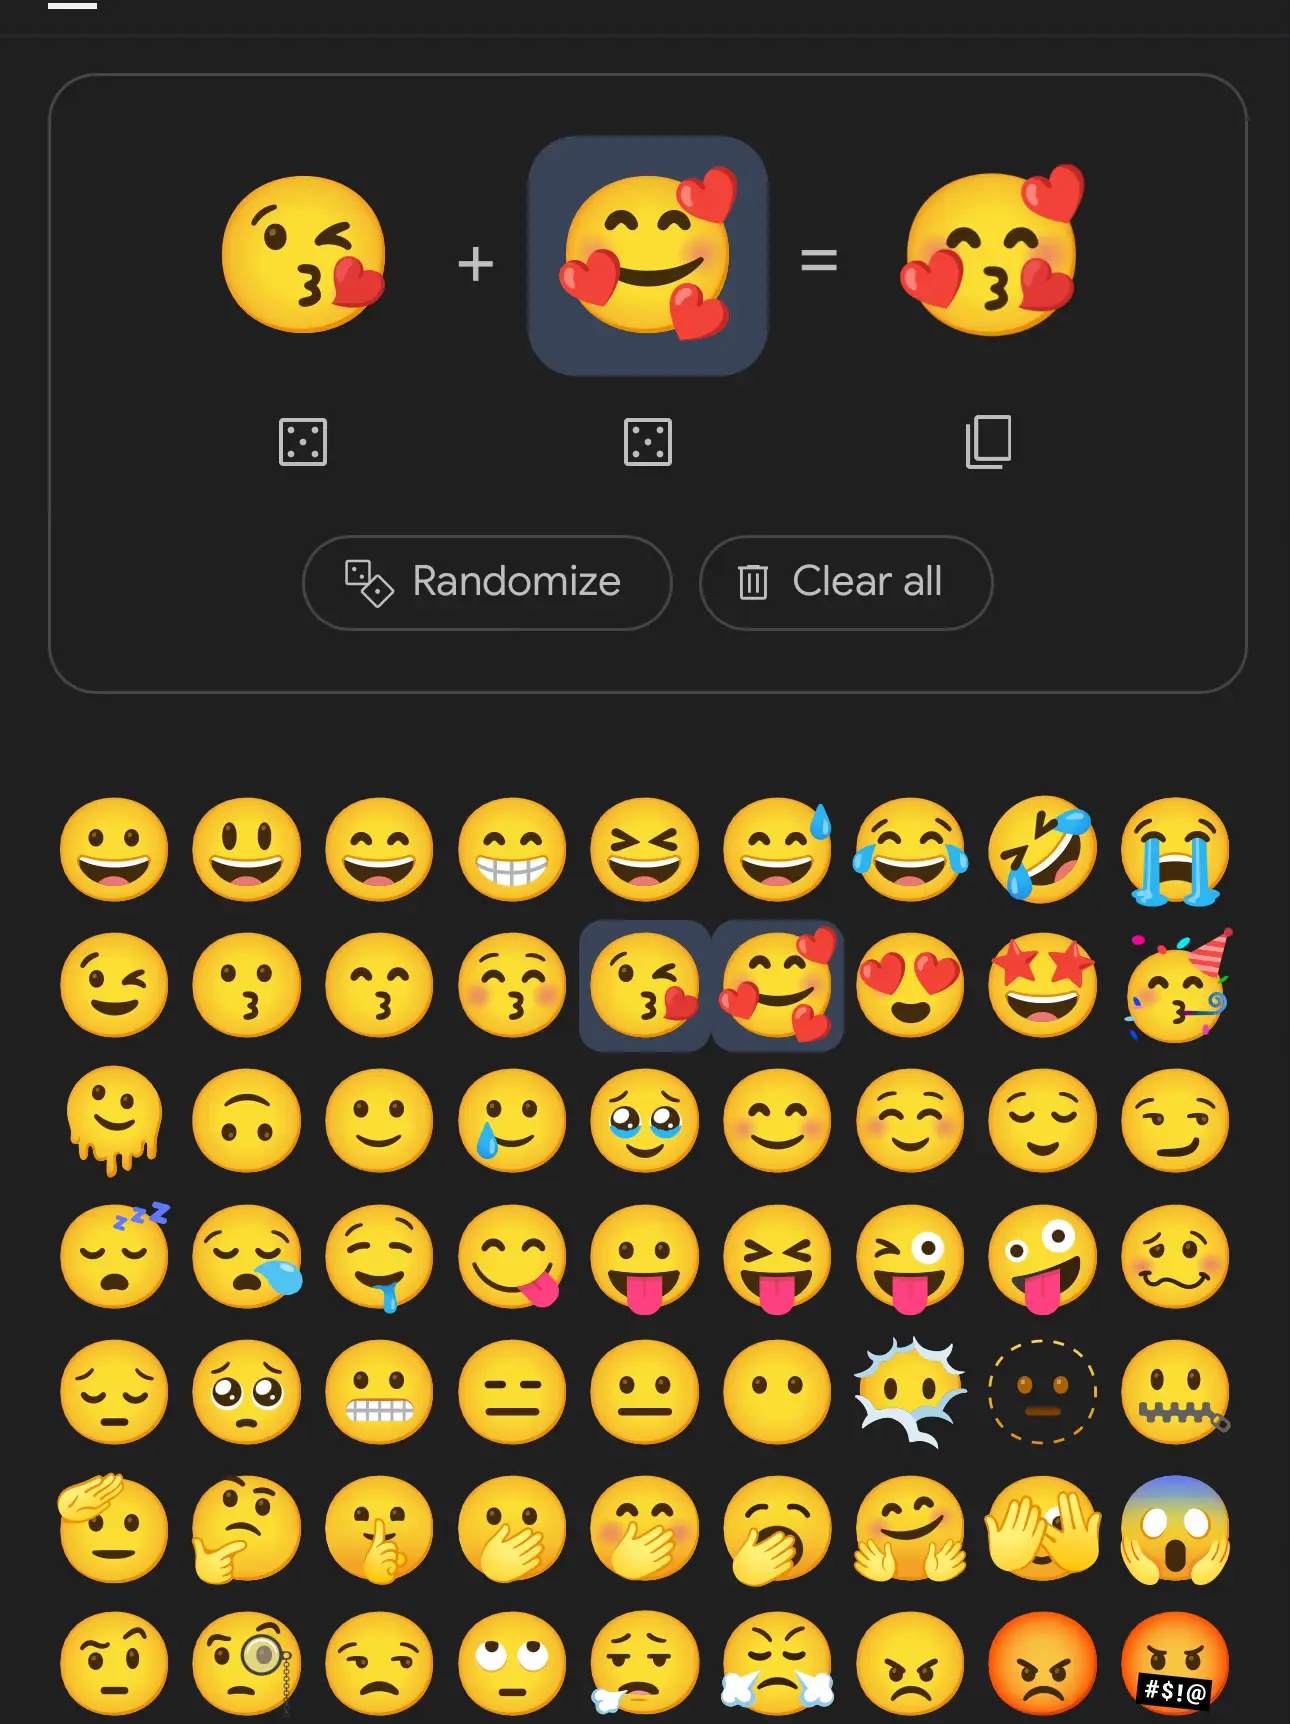 Baking Emojis - Lemon8 Search